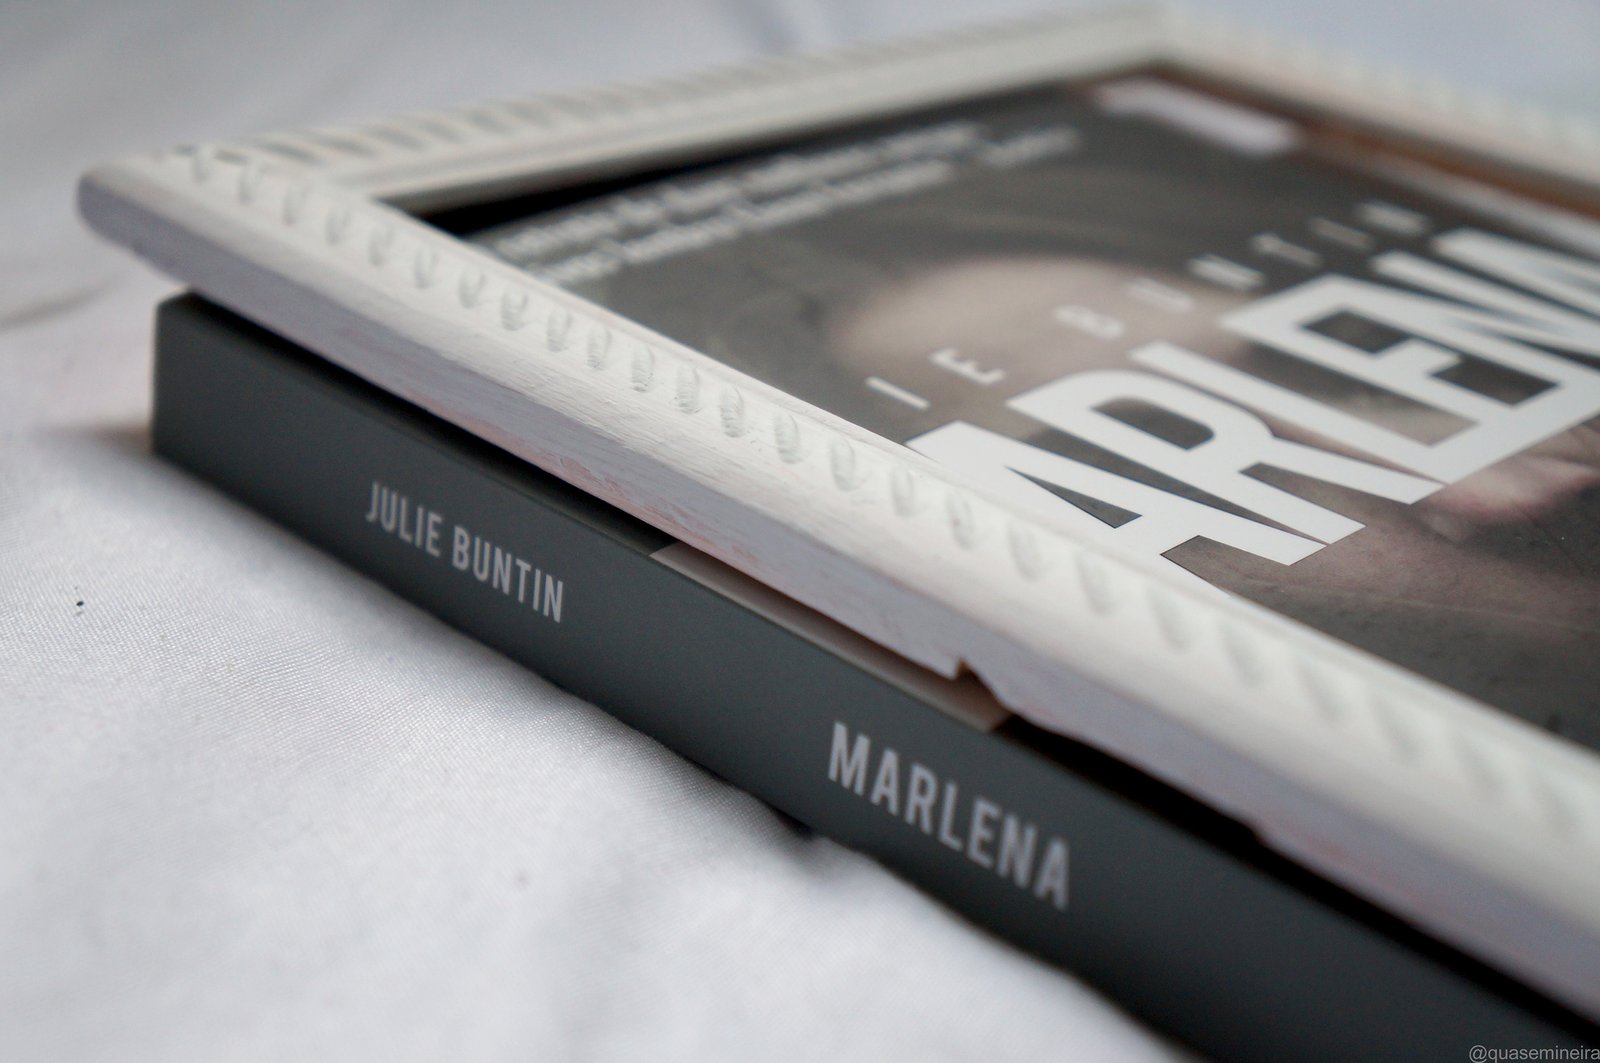 Marlena — Julie Buntin 3